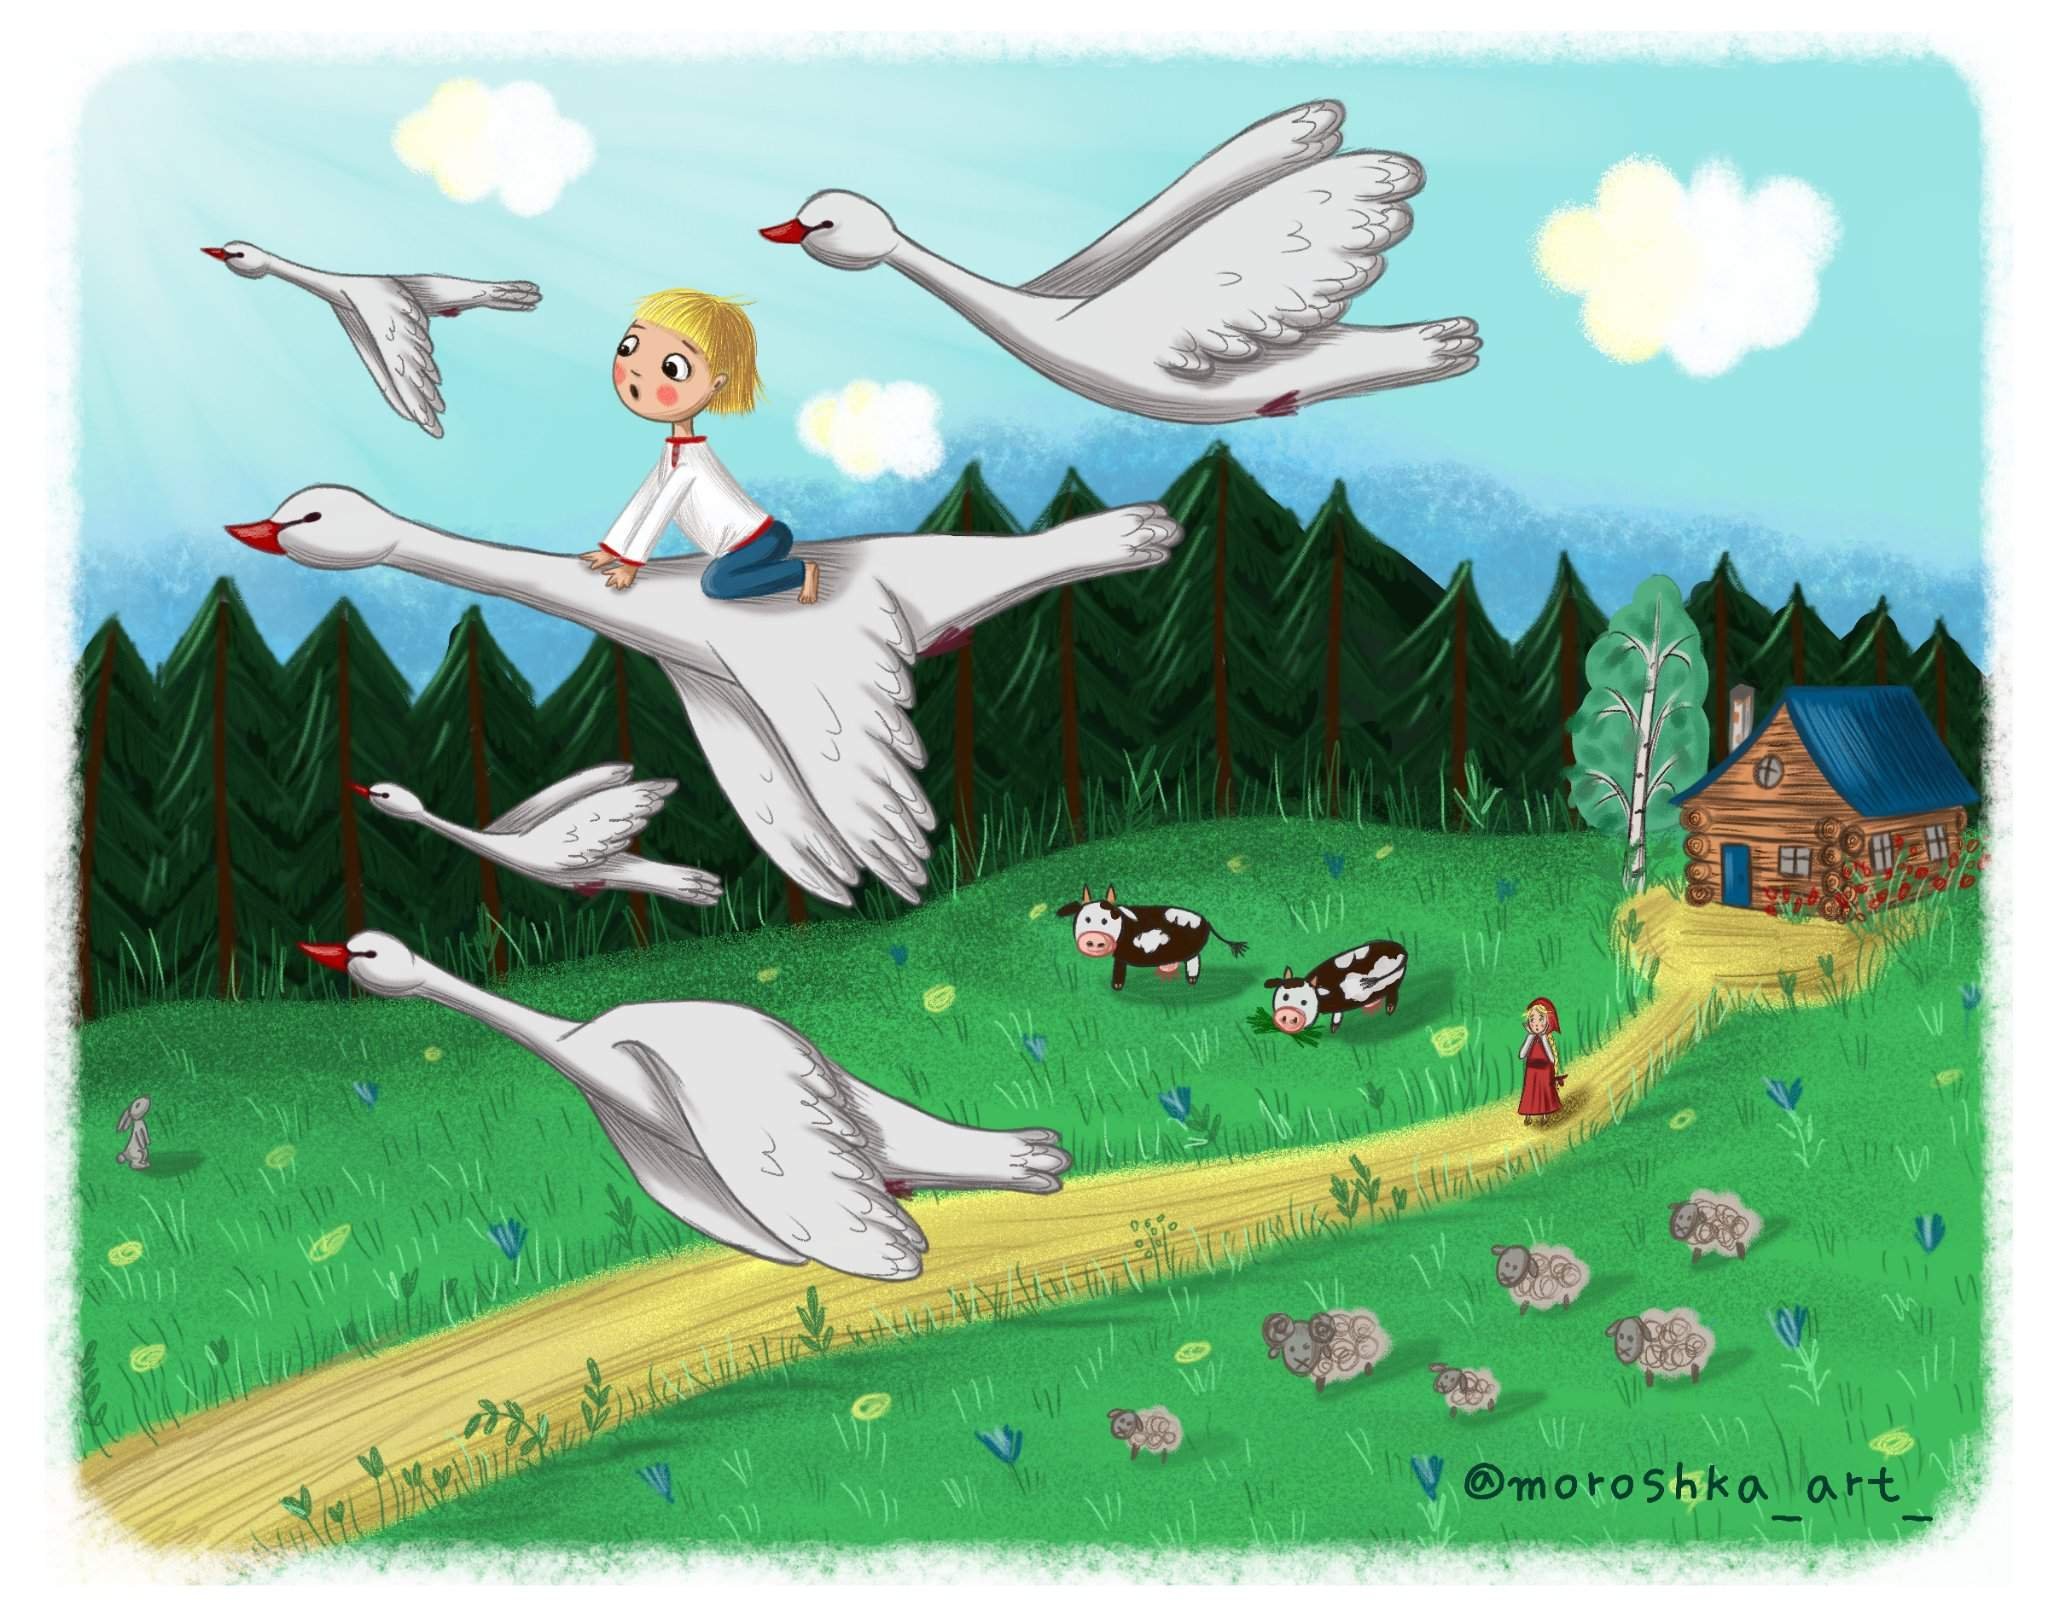 Сказка гуси лебеди в картинках. Иллюстрация к сказке гуси лебеди. Иллюстрация к сказке гуси лебеди для детей. Сказка гуси лебеди Иванушка. Сказка гуси лебеди для детей.